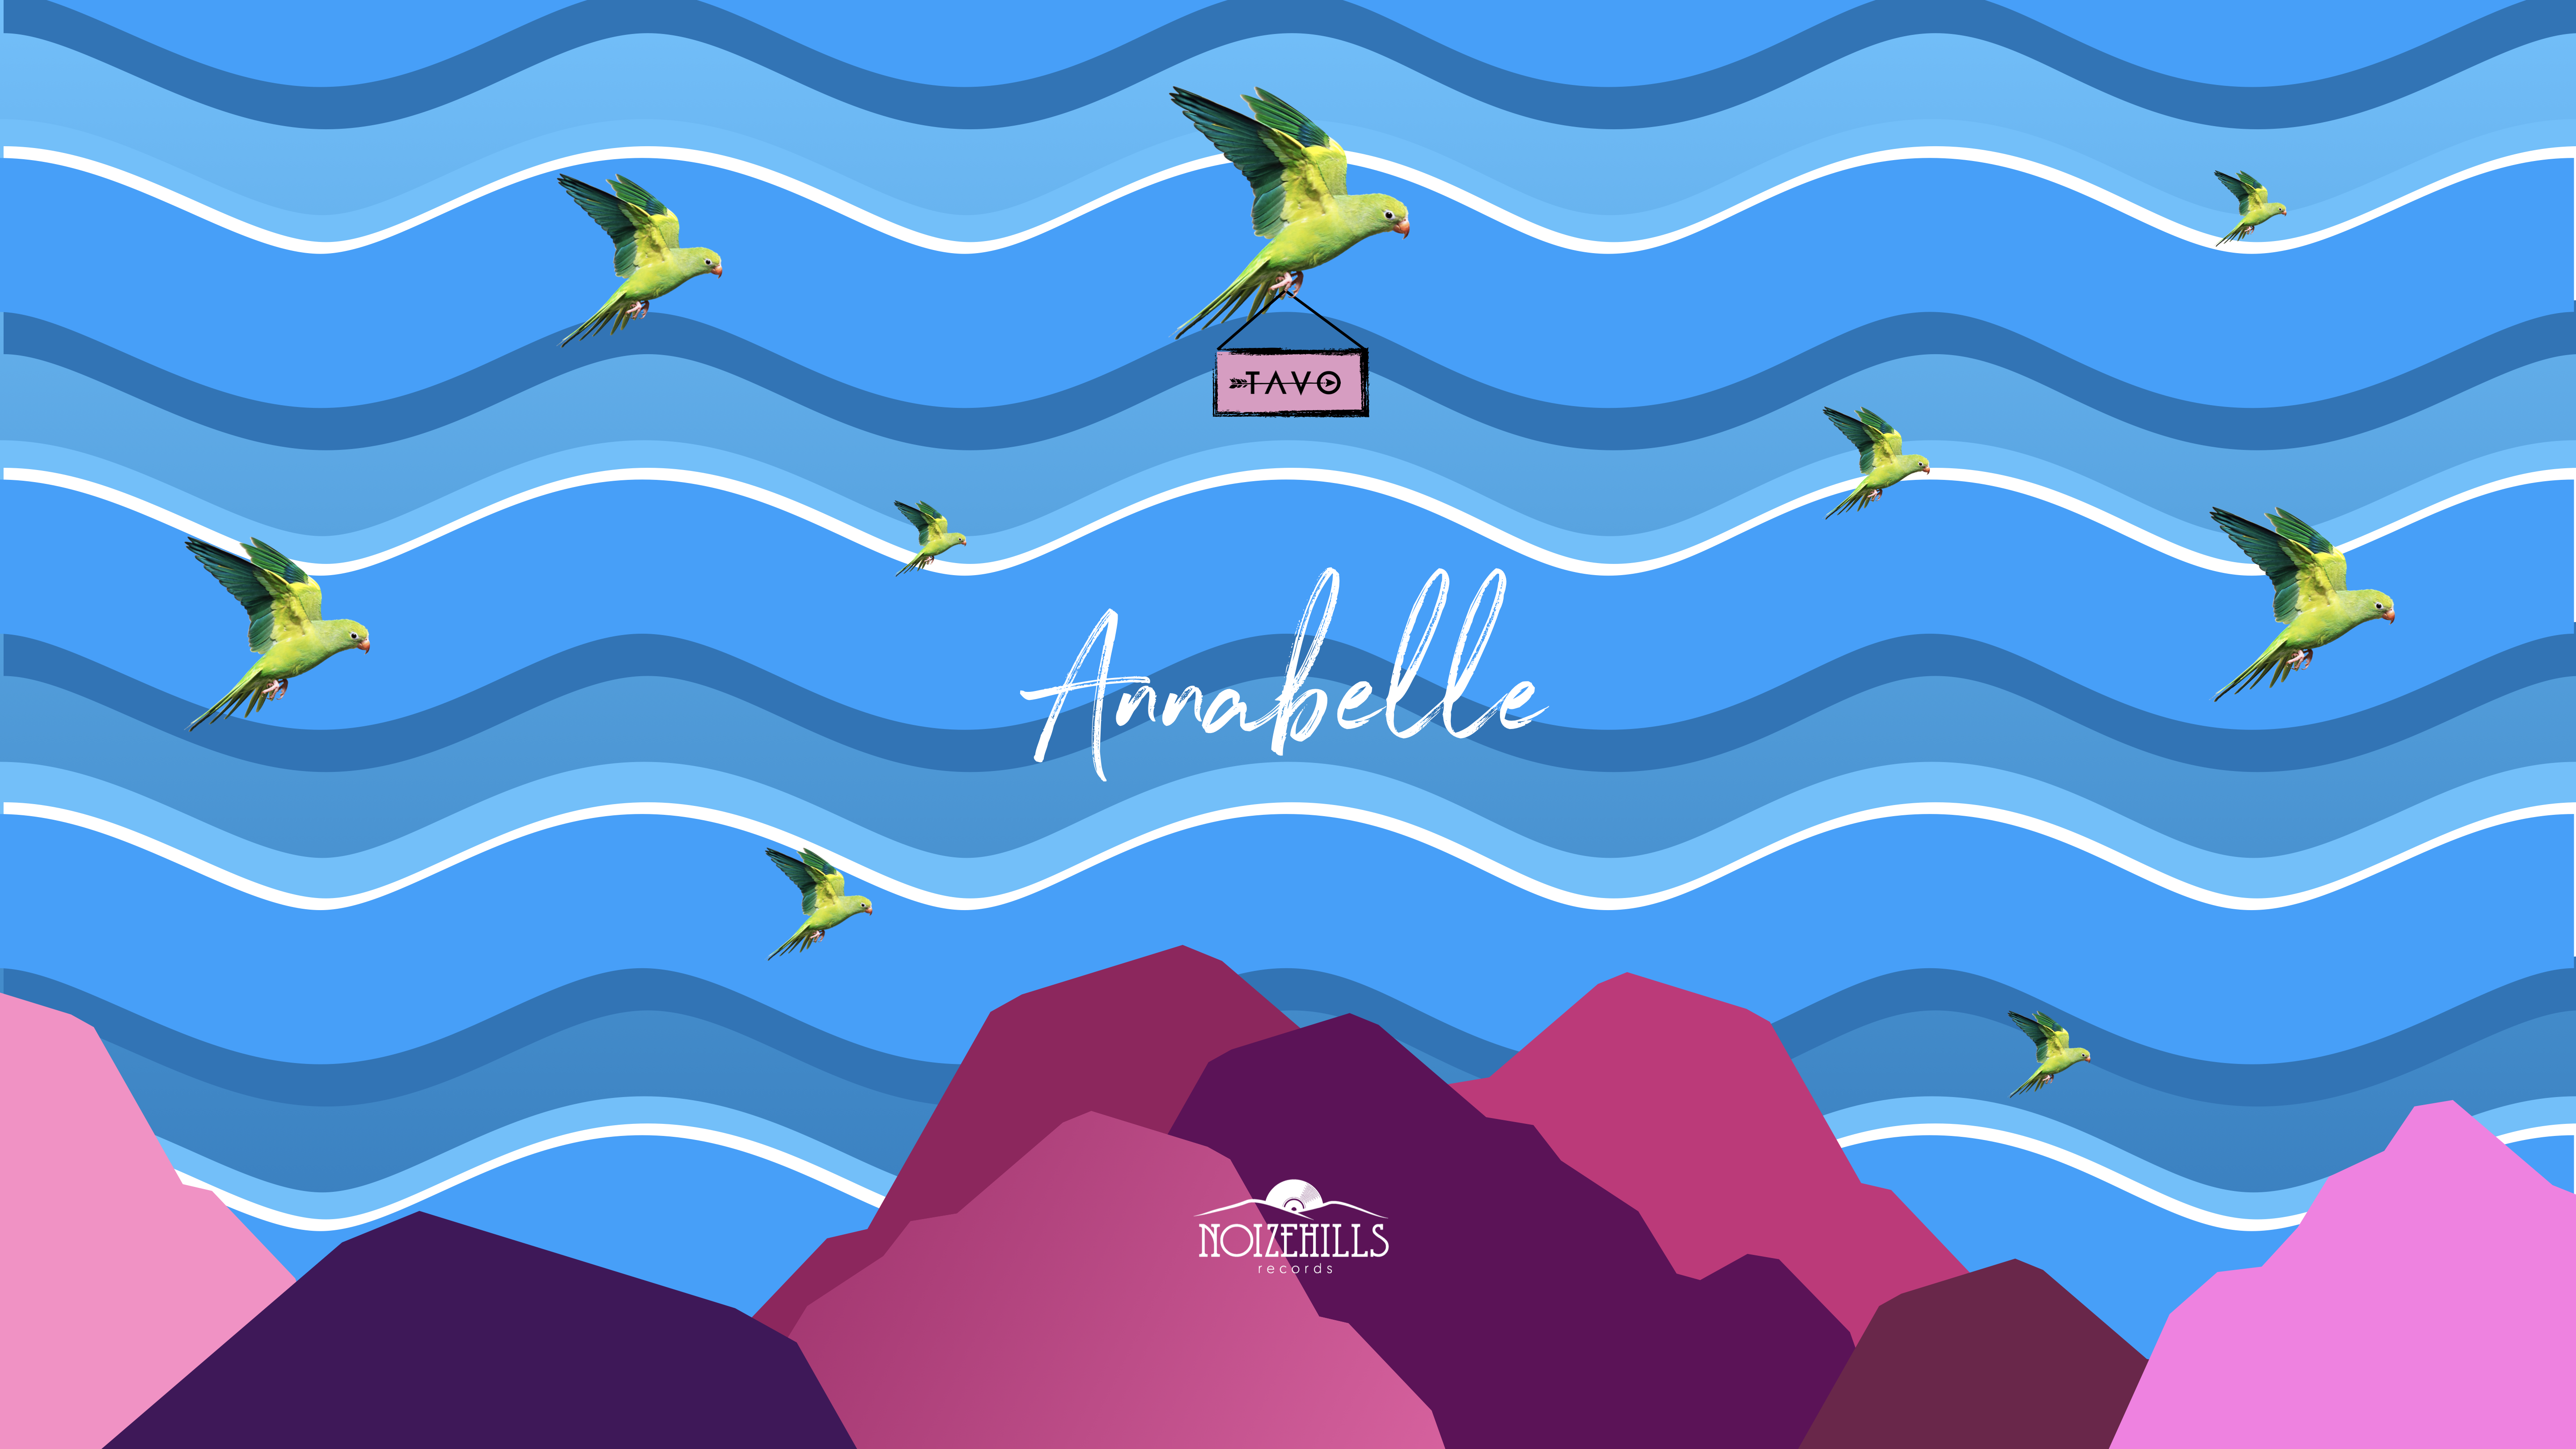 L’intervista – Tavo ci parla del suo brano “Annabelle” – RadioSelfie.it